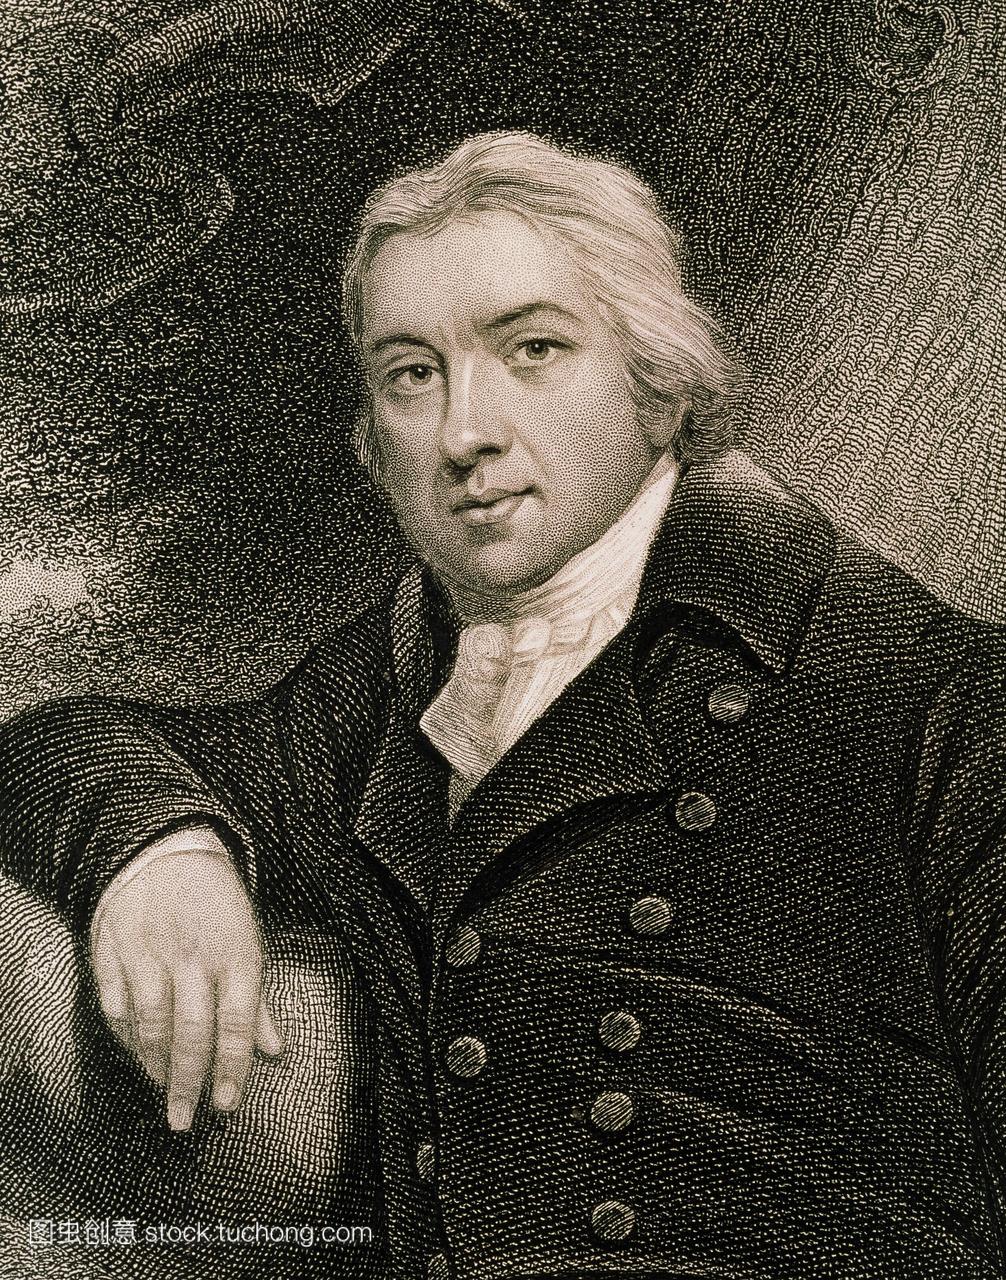 ·詹纳。雕刻的爱德华·詹纳1749-1823英国医